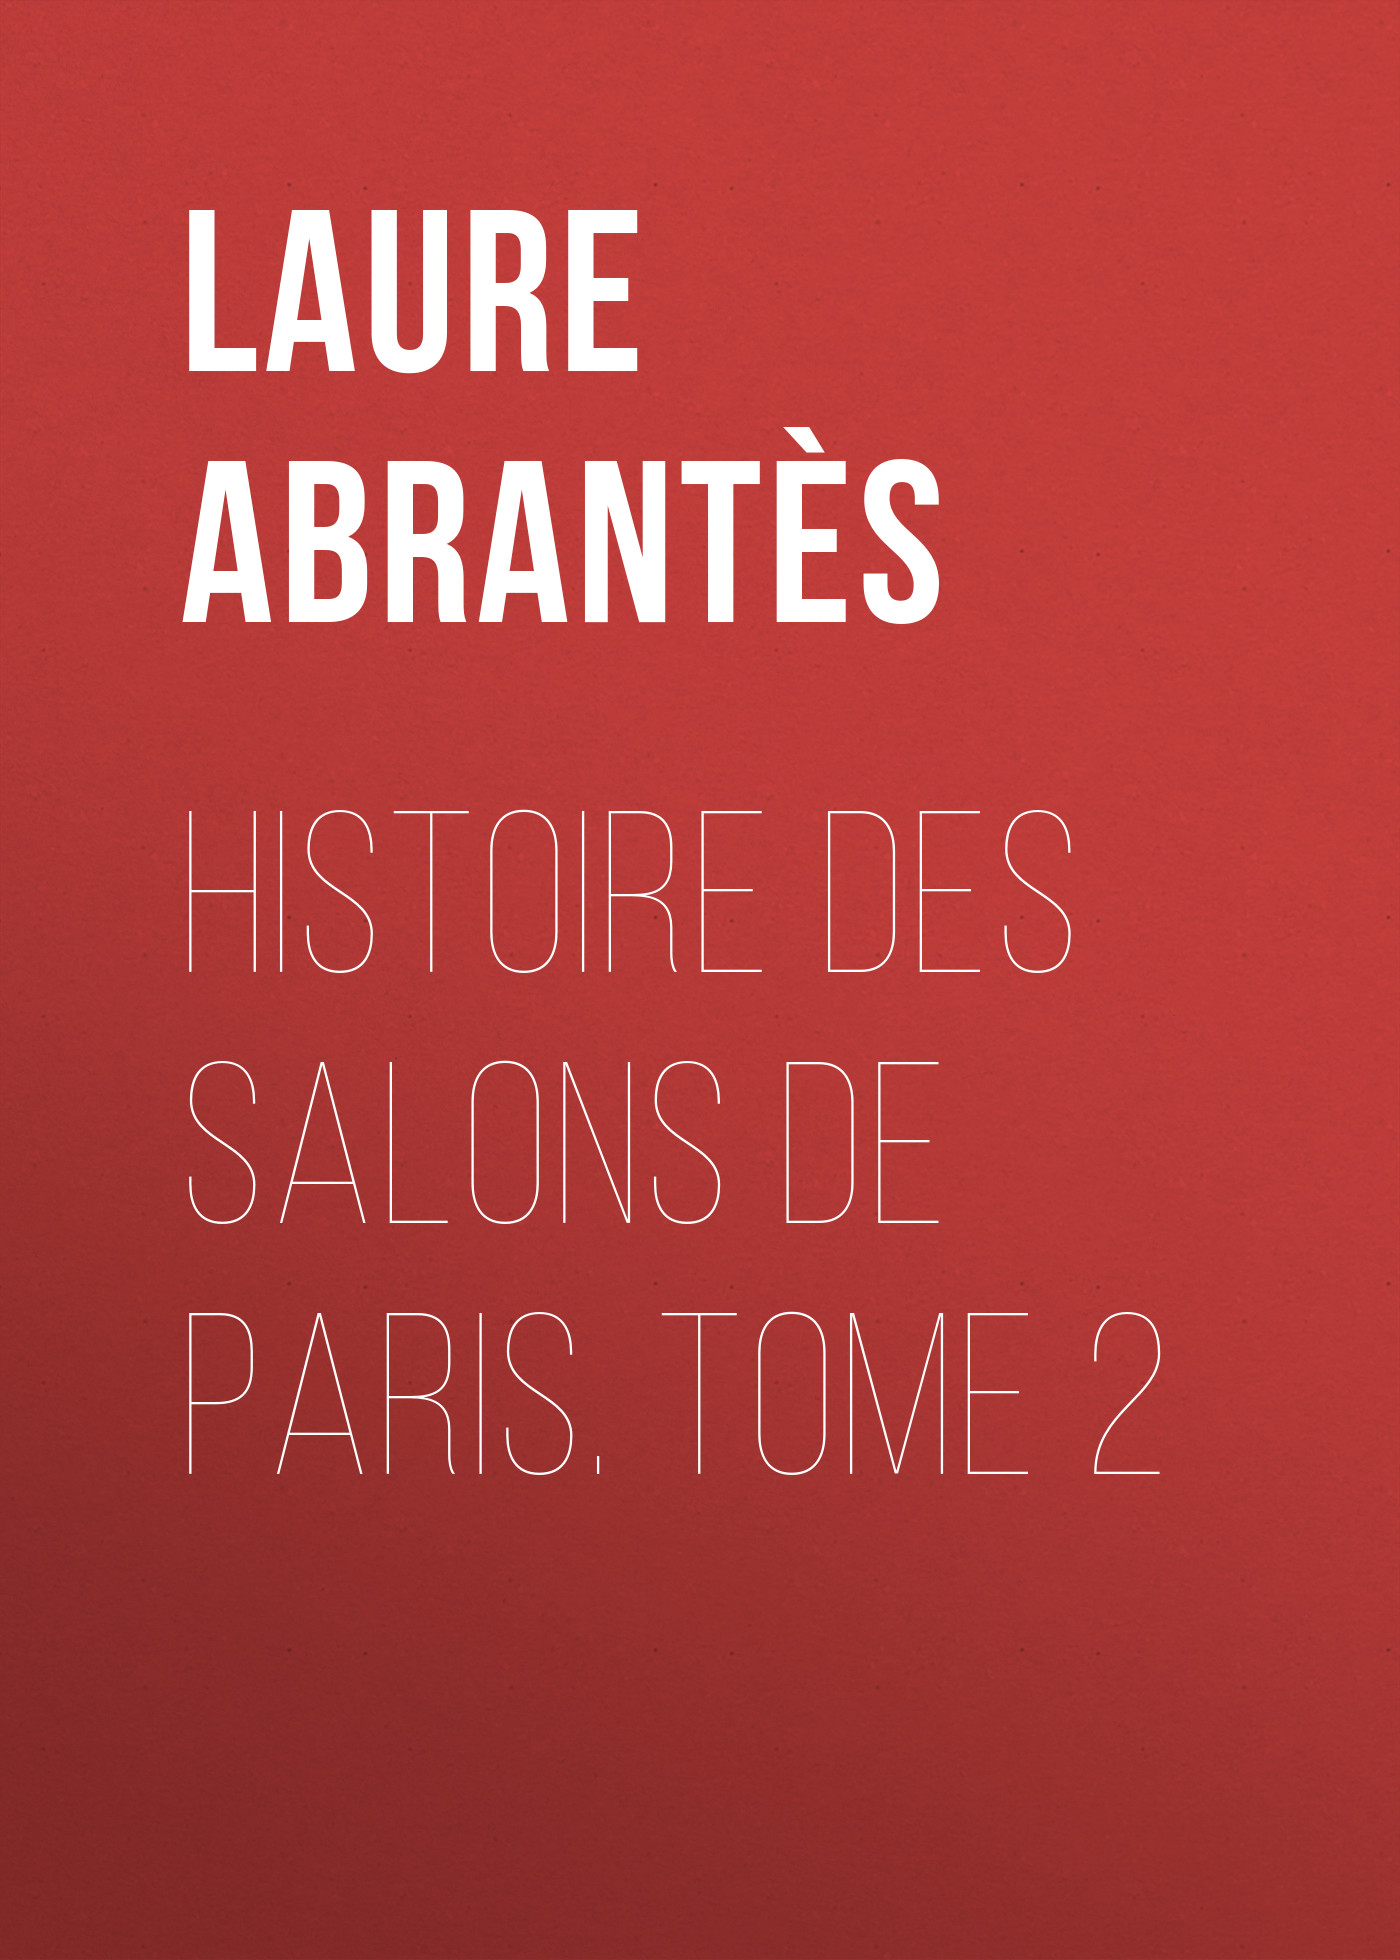 Histoire des salons de Paris. Tome 2